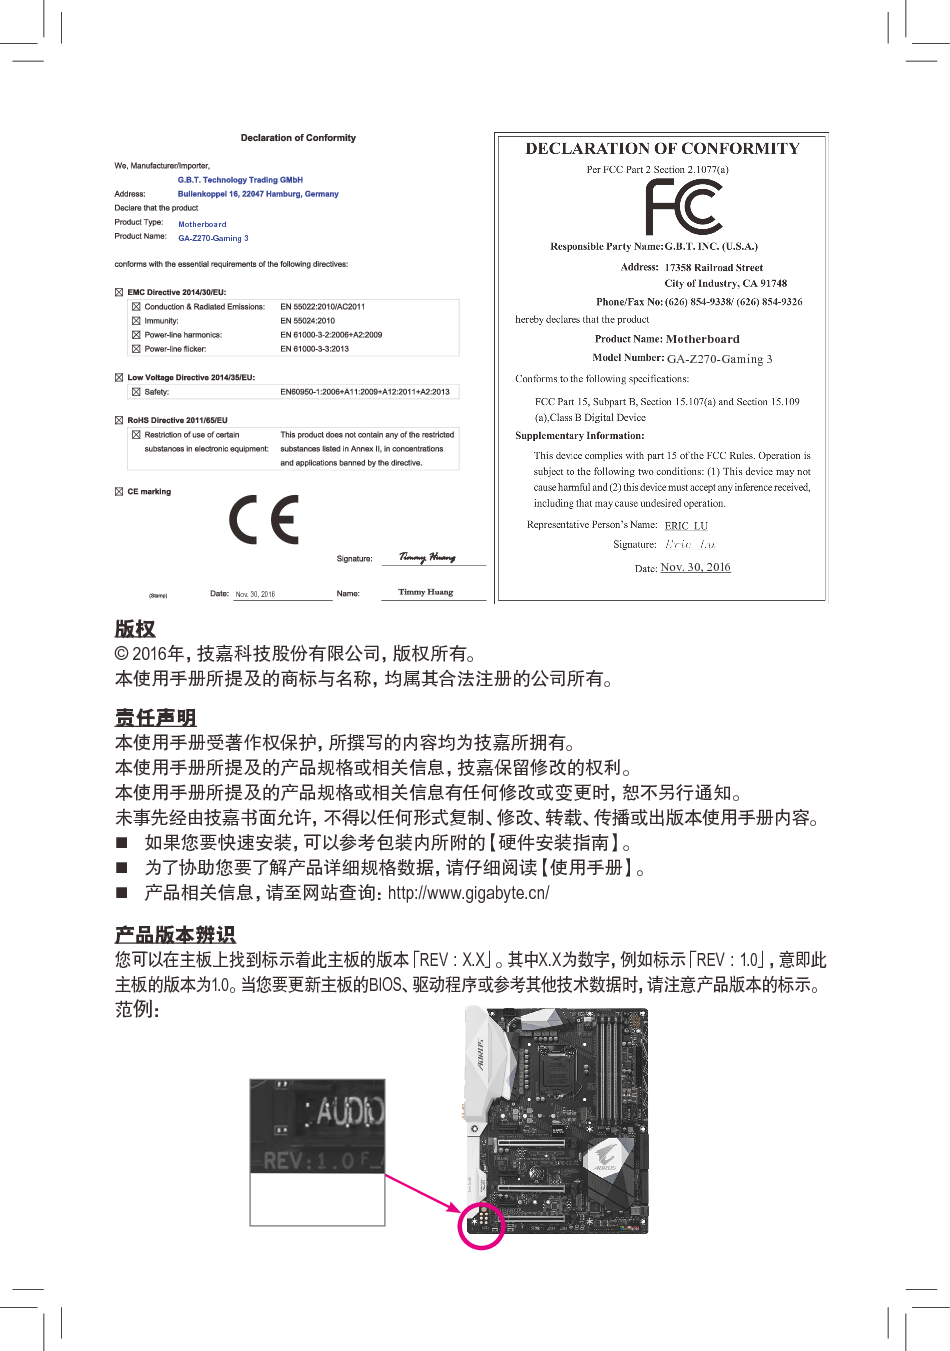 技嘉 Gigabyte GA-Z270-Gaming 3 使用手册 第1页